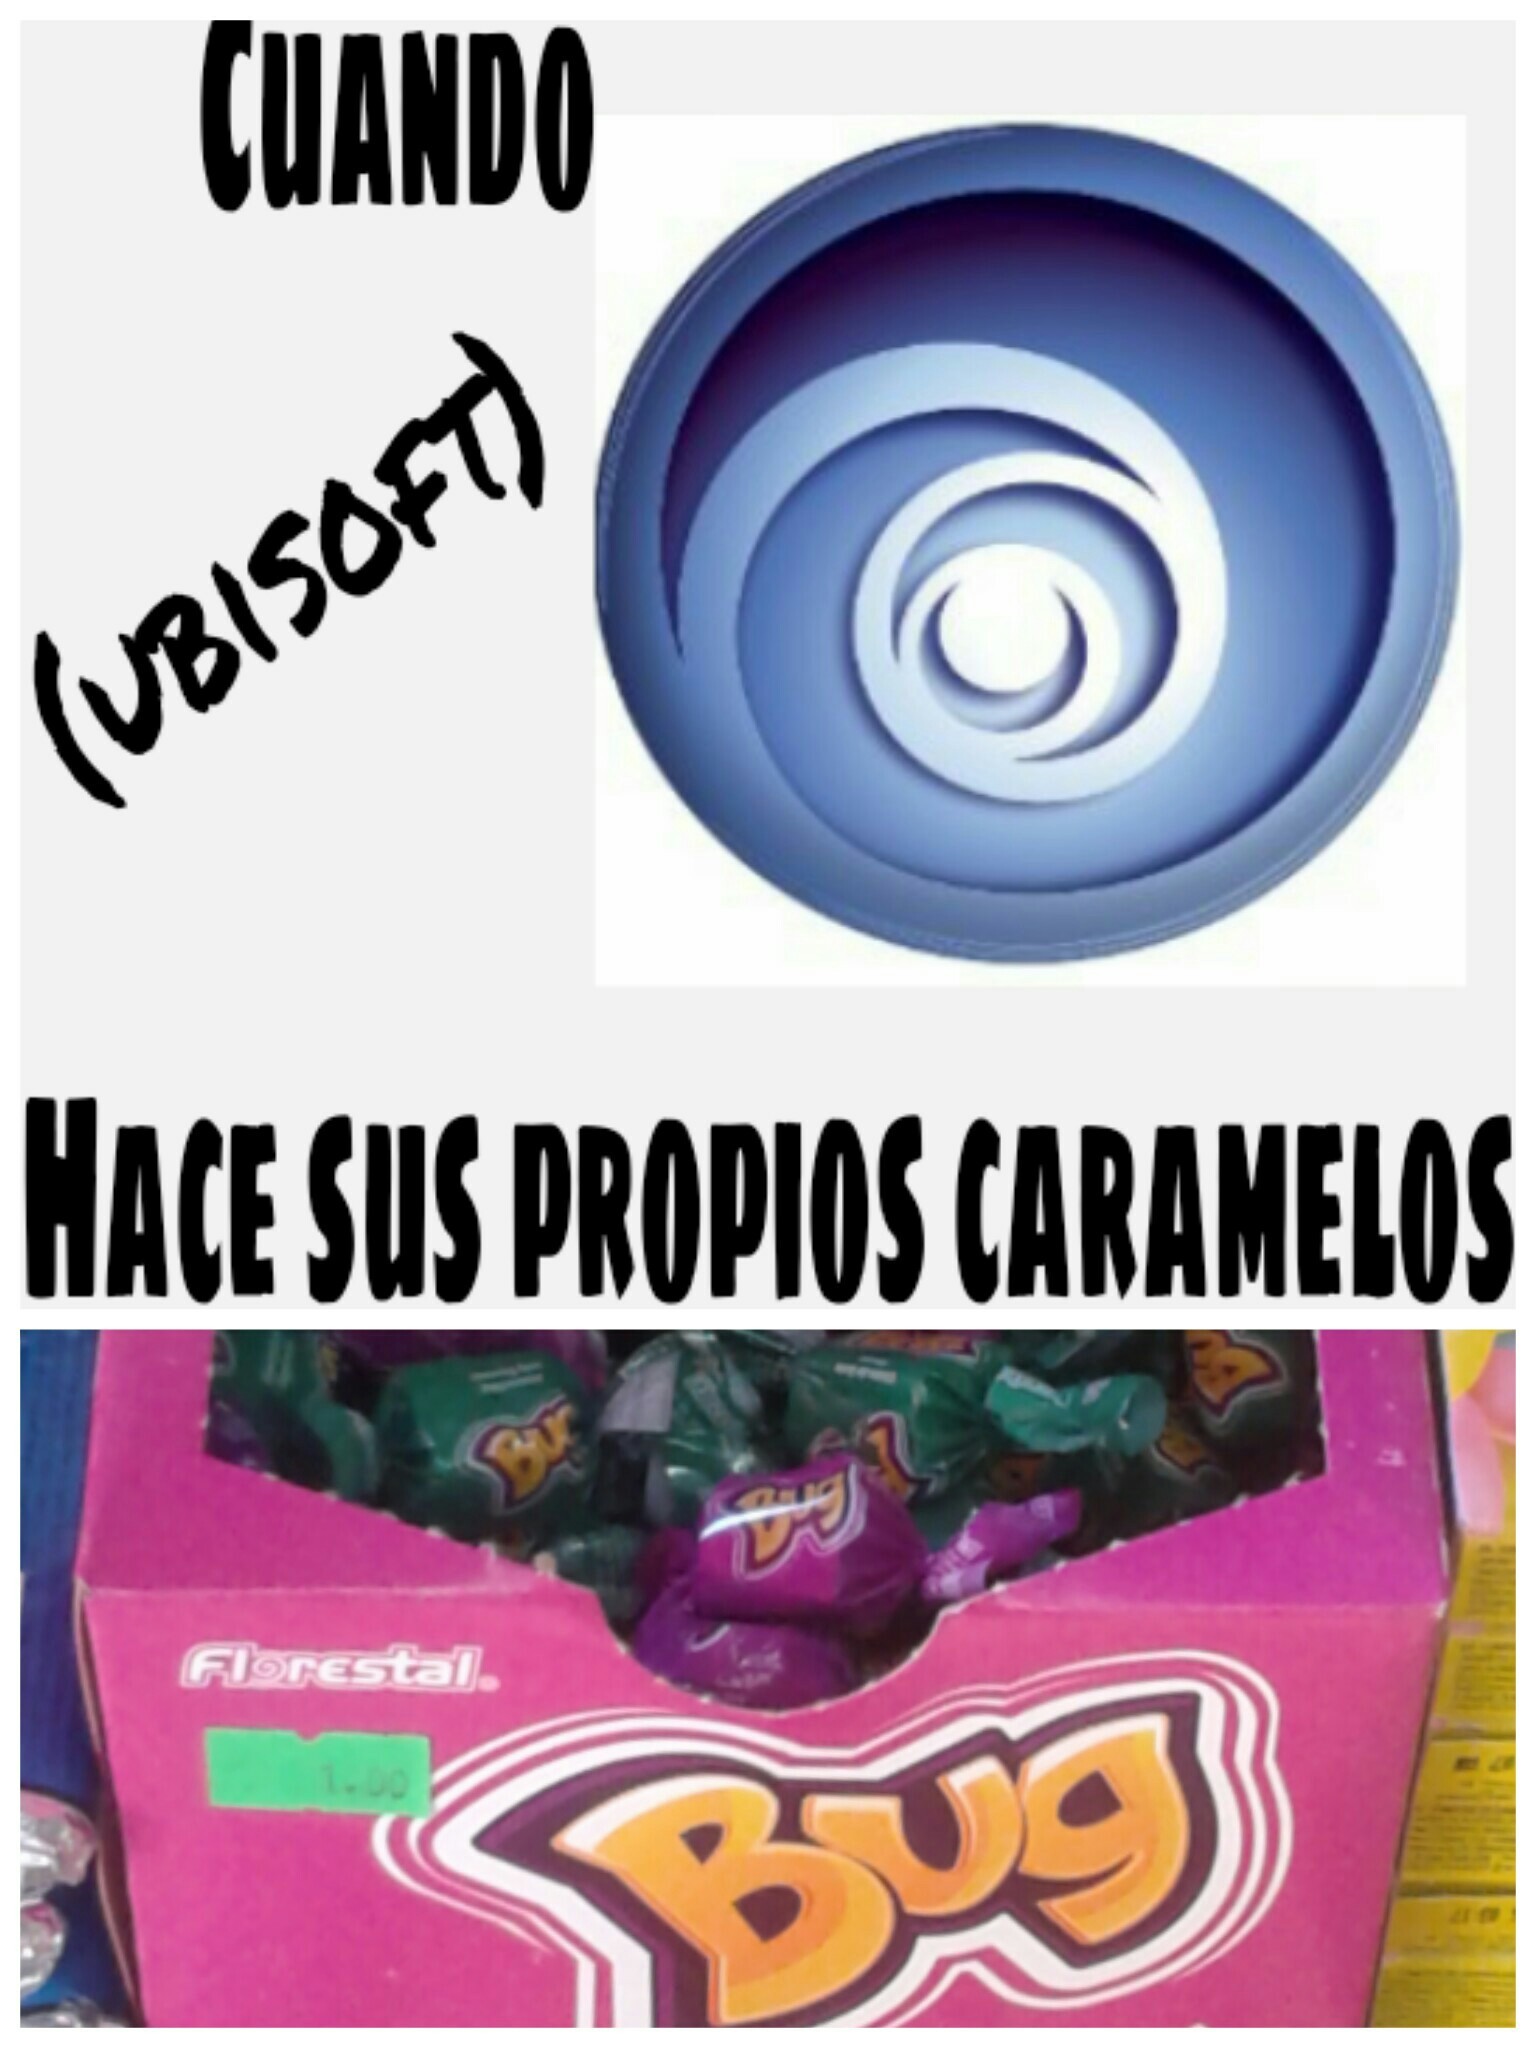 Caramelitos 7u7 (original) - meme